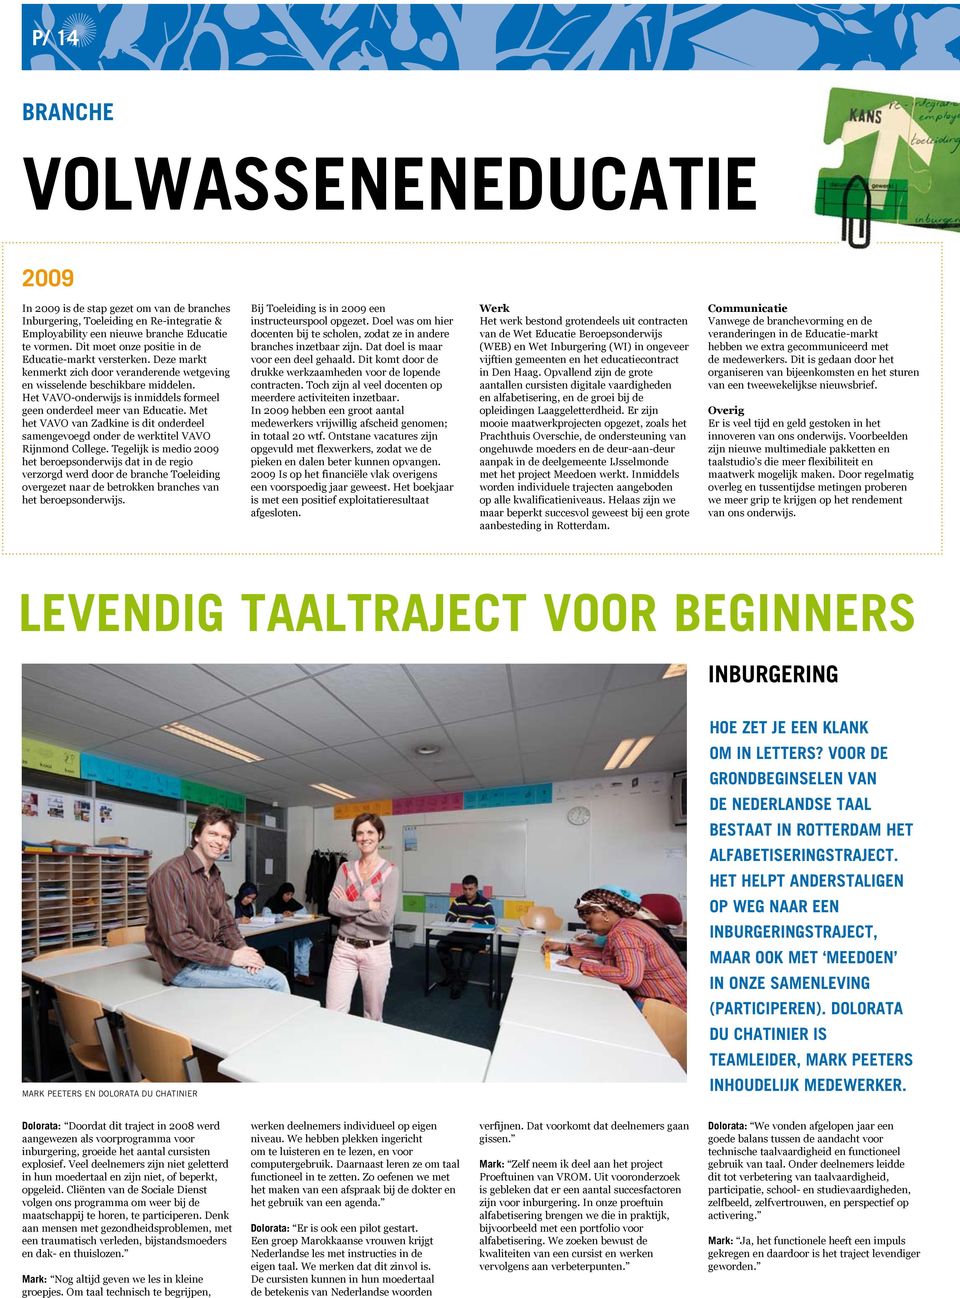 Het VAVO-onderwijs is inmiddels formeel geen onderdeel meer van Educatie. Met het VAVO van Zadkine is dit onderdeel samengevoegd onder de werktitel VAVO Rijnmond College.